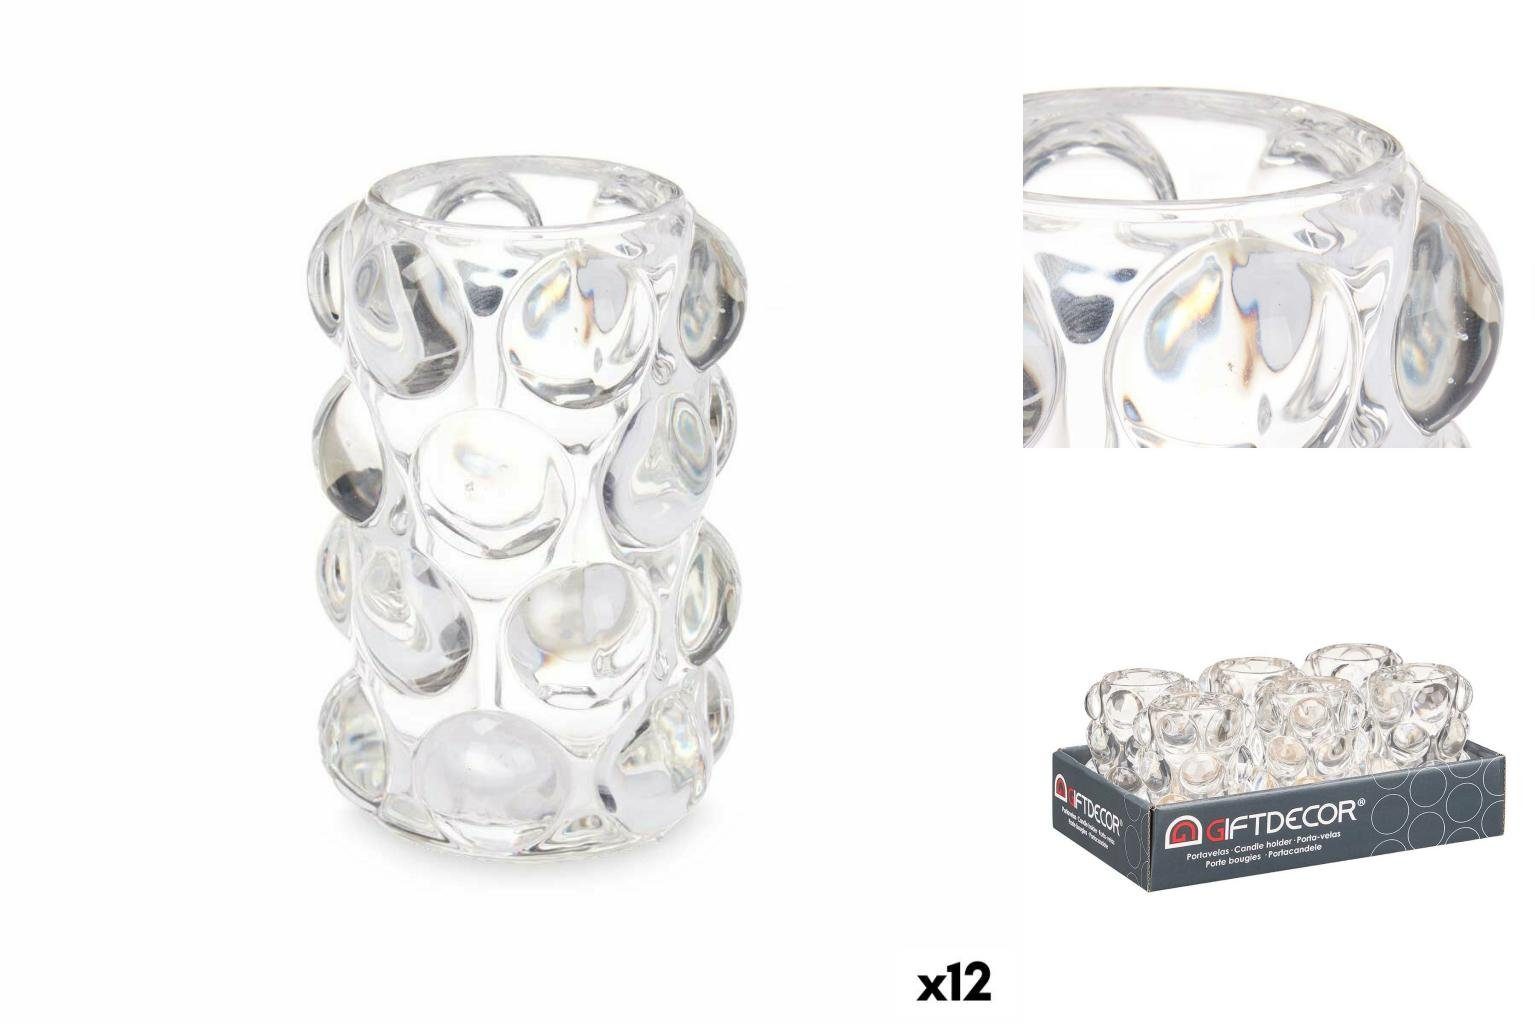 x Gift Glas Kerzenschale cm Decor 12 Windlicht 12,5 x 8,4 Durchsichtig 8,4 Stü Mikrosphären